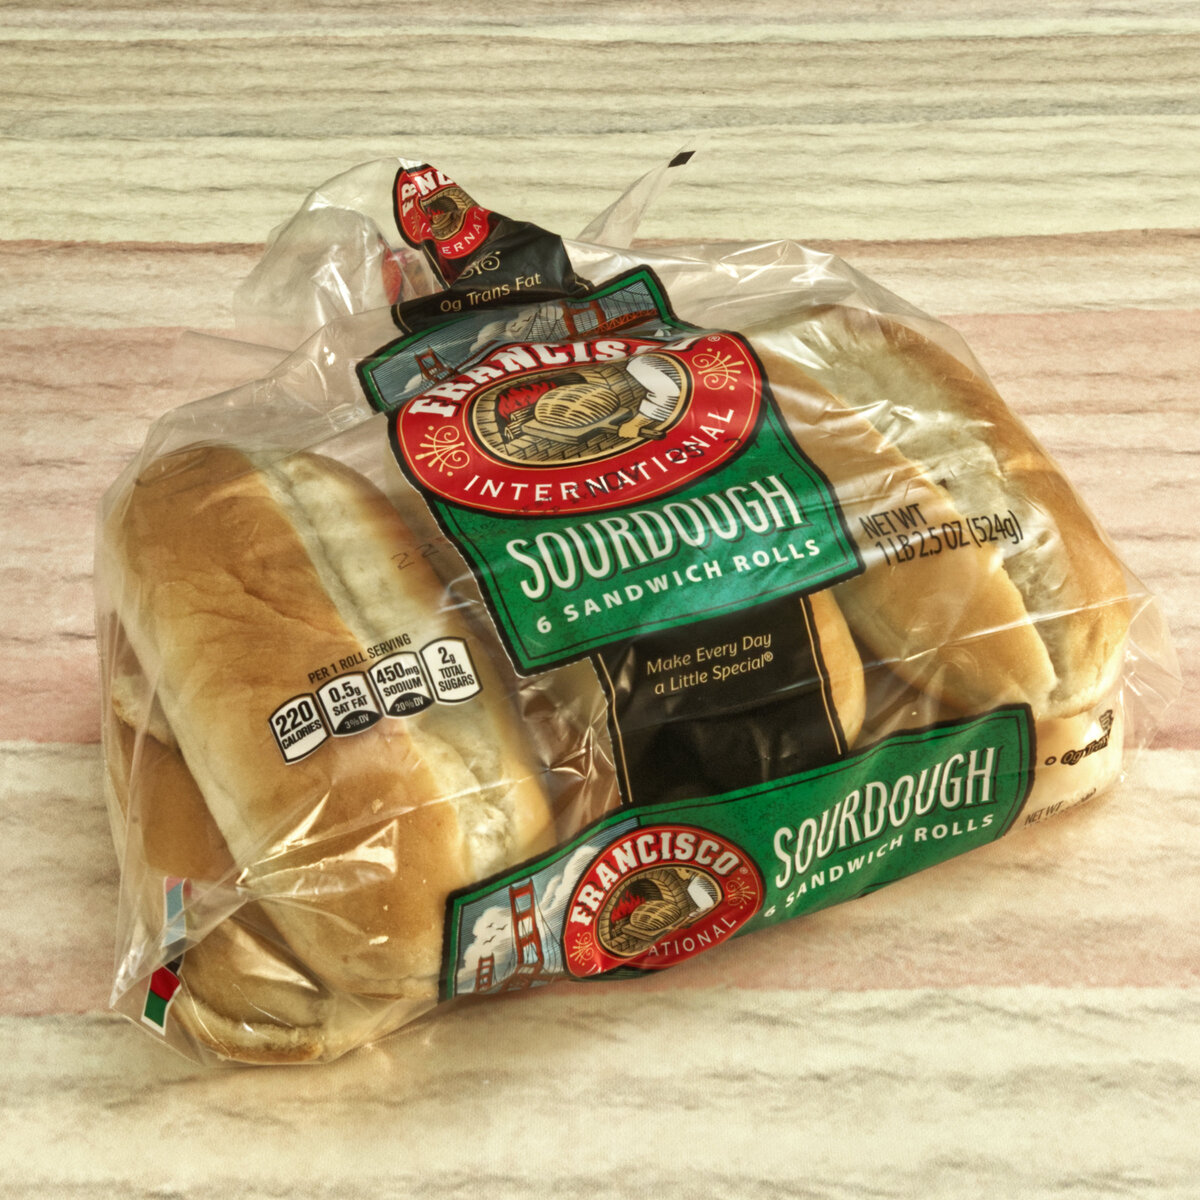 Packaged Sourdough Sandwich Rolls